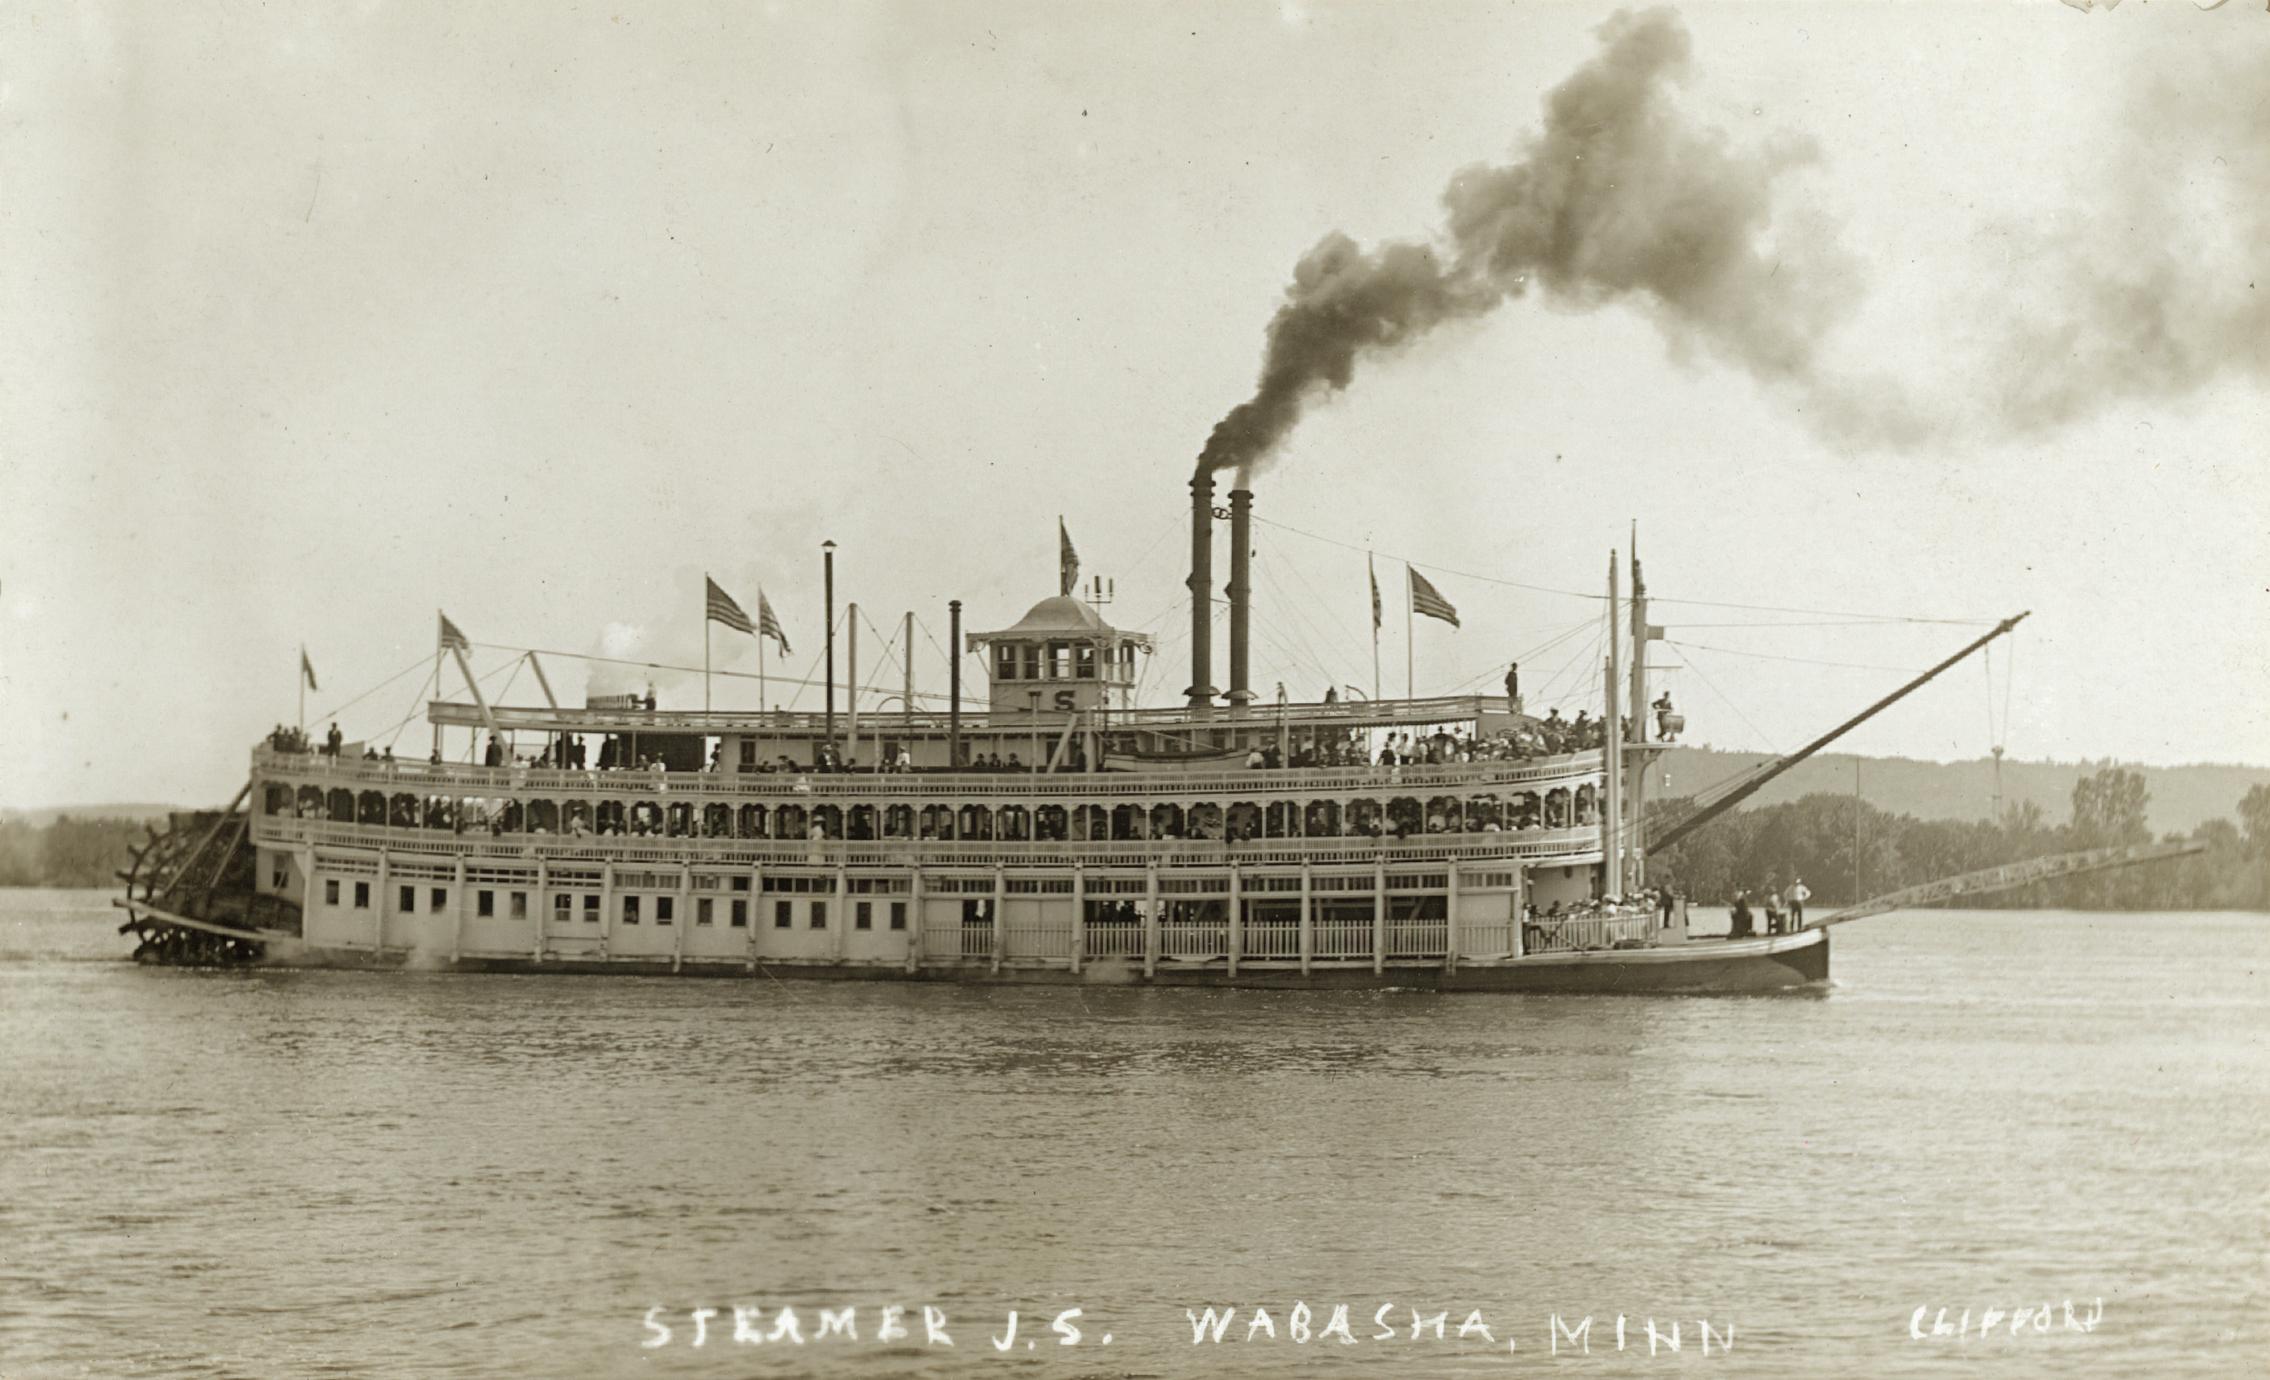 Steamer J.S., Wabasha, Minn.